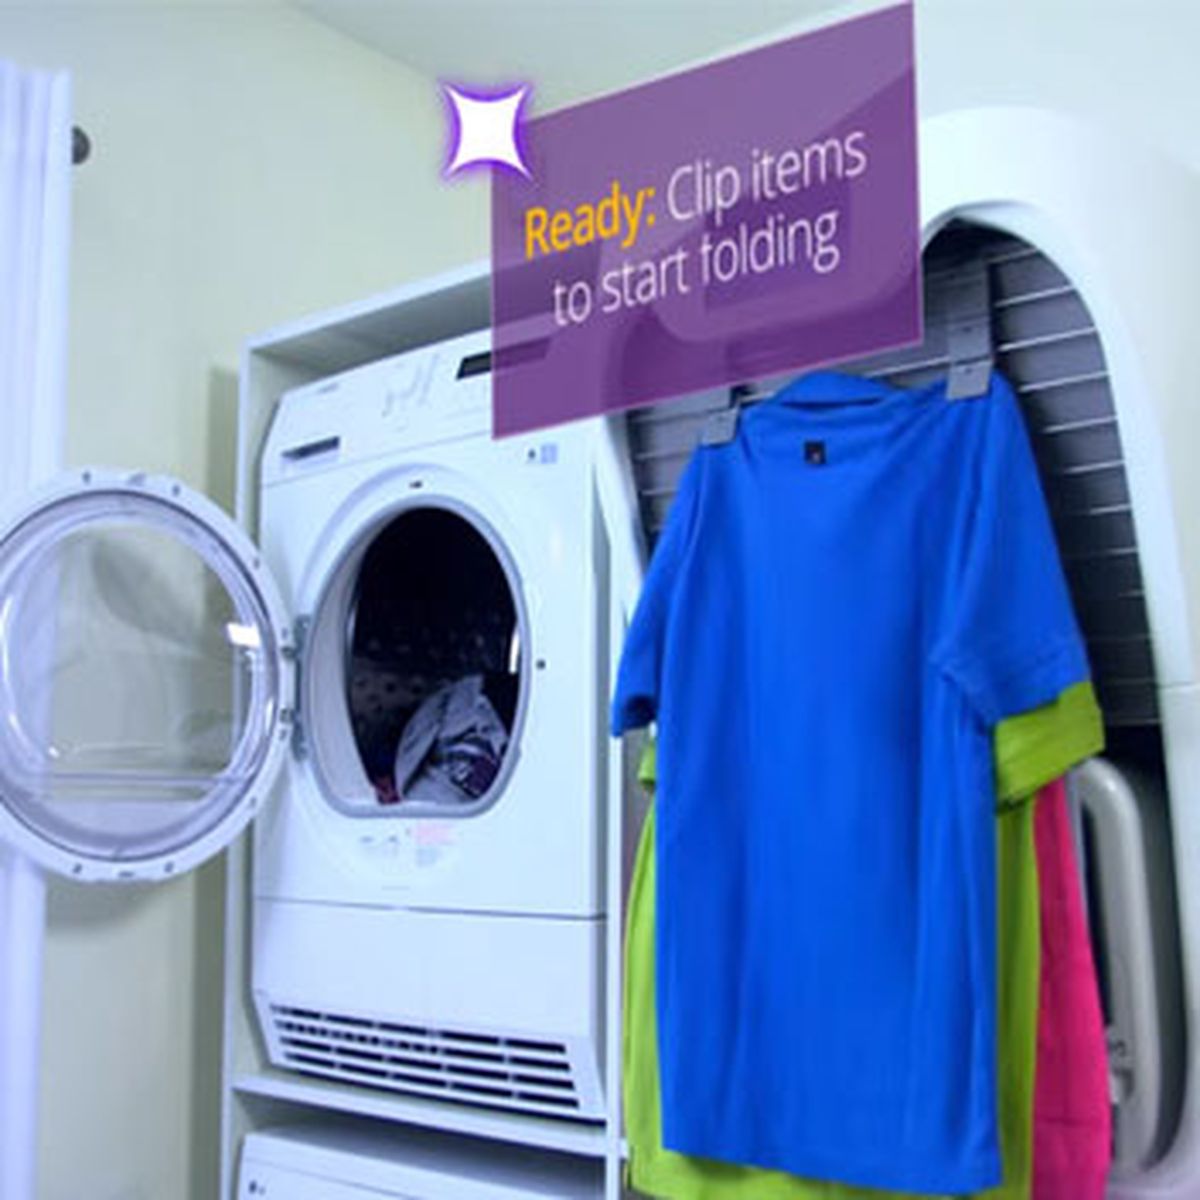 Esta máquina lava, seca, plancha y dobla la ropa por ti